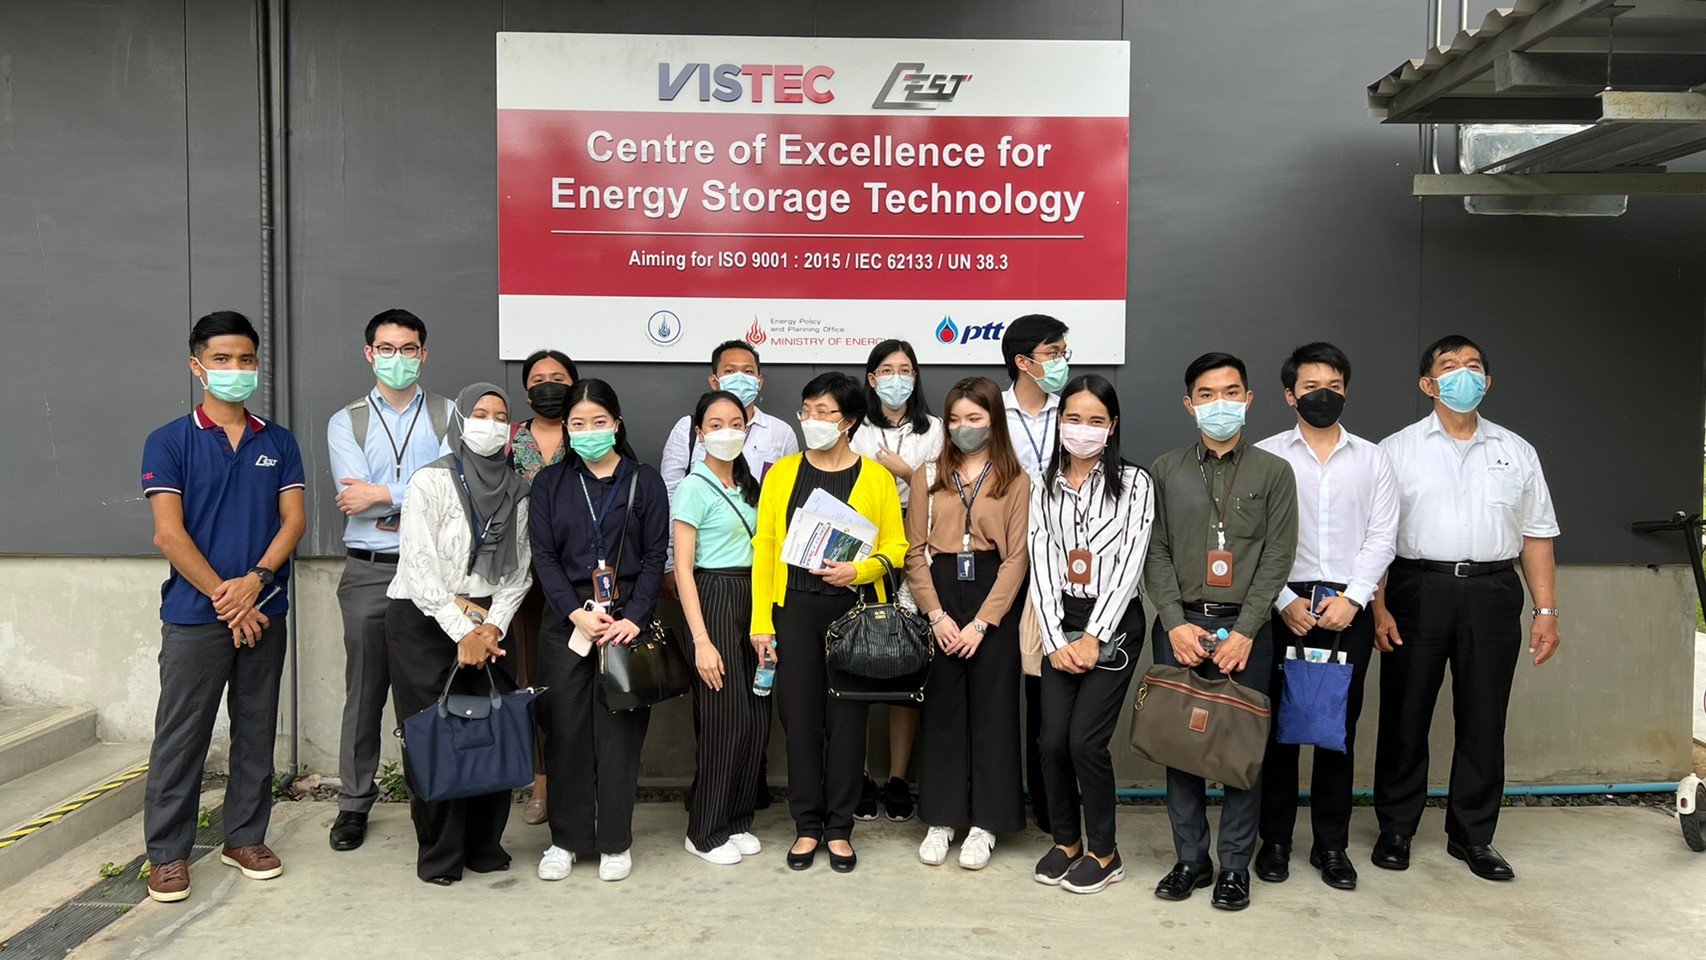 ศูนย์ความเป็นเลิศด้านเทคโนโลยีกักเก็บพลังงาน (CEST) ให้การต้อนรับ กระทราวงต่างประเทศ และคณะ ในโอกาสเข้าเยี่ยม สถาบันวิทยสิริเมธี (VISTEC) วันที่ 11-05-65